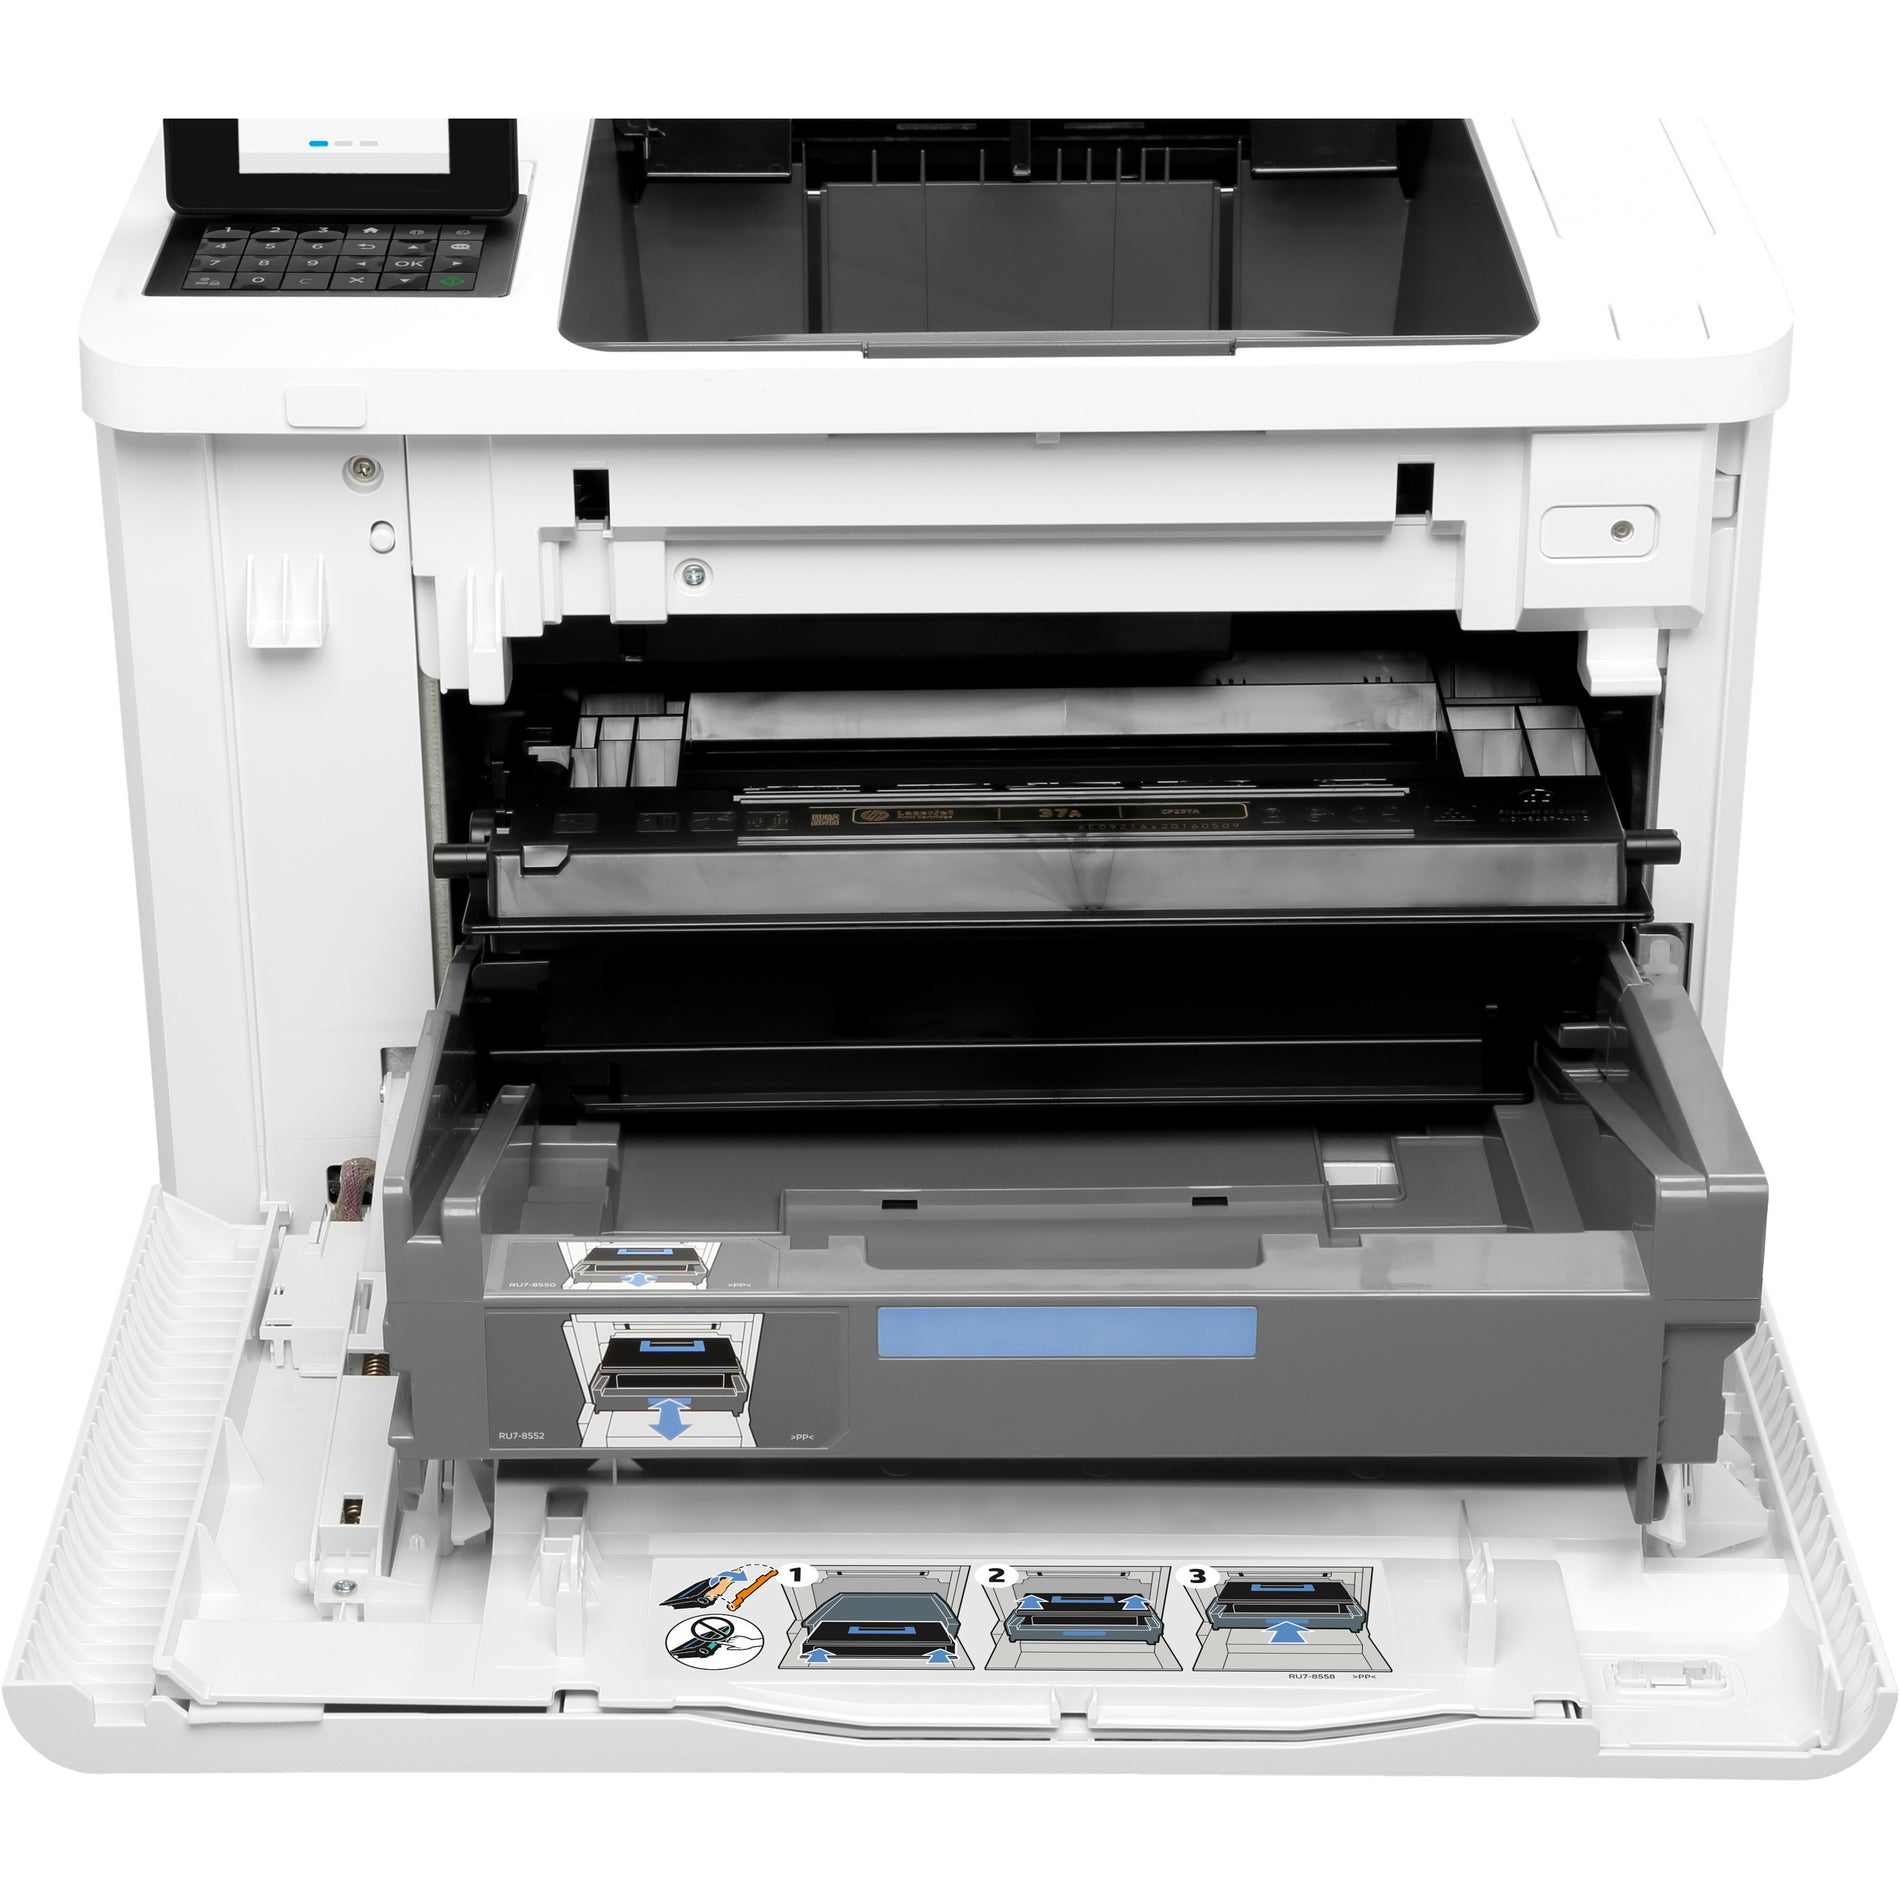 HP LaserJet M607 M607n Desktop Laser Printer - Monochrome (K0Q14A#BGJ)